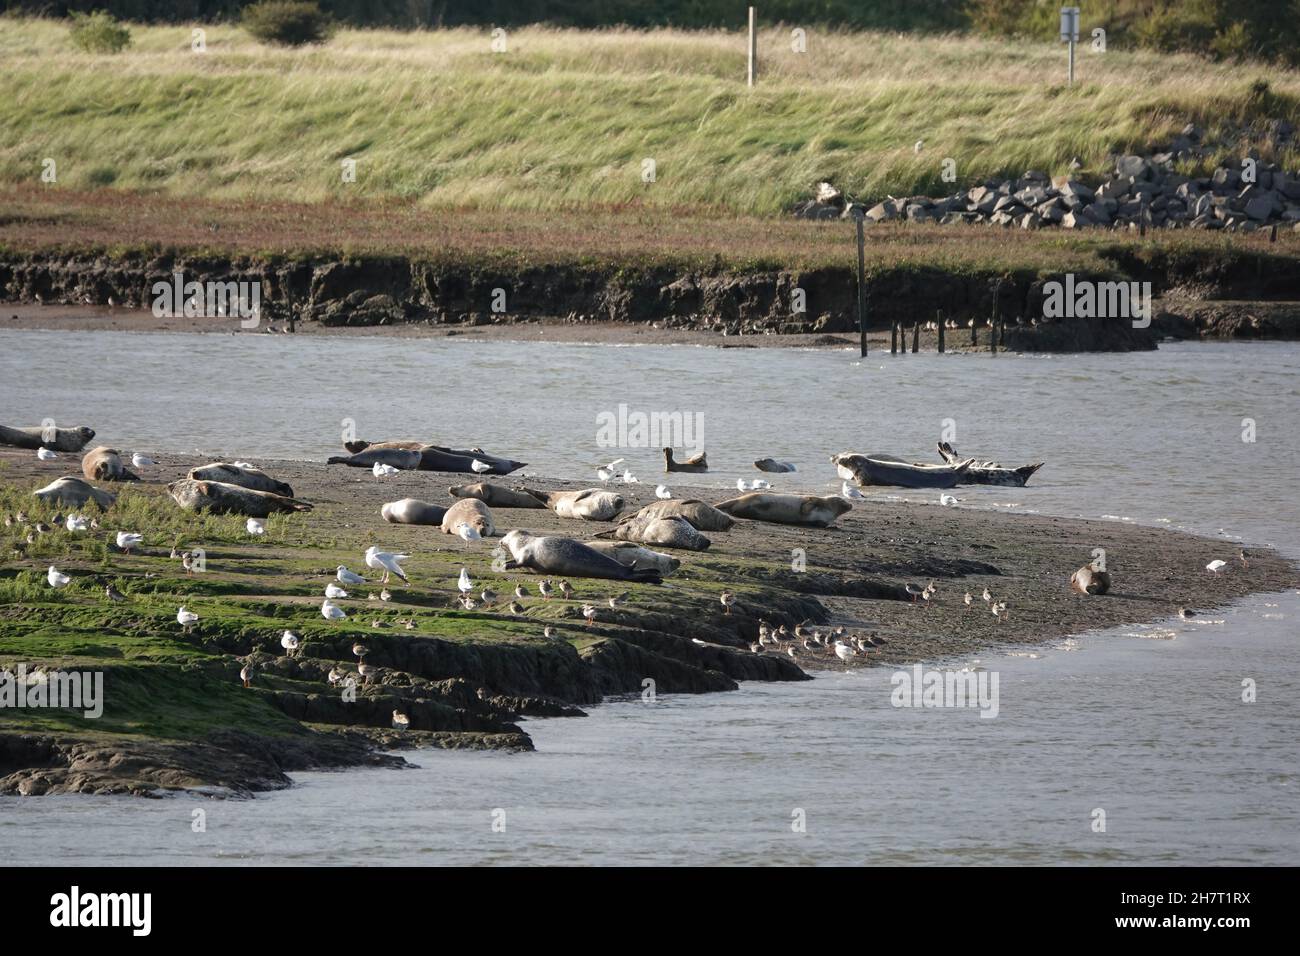 Les phoques se prélassent au soleil sur une rive au milieu de mouettes et de queue rouge à Teesside, au Royaume-Uni. Banque D'Images